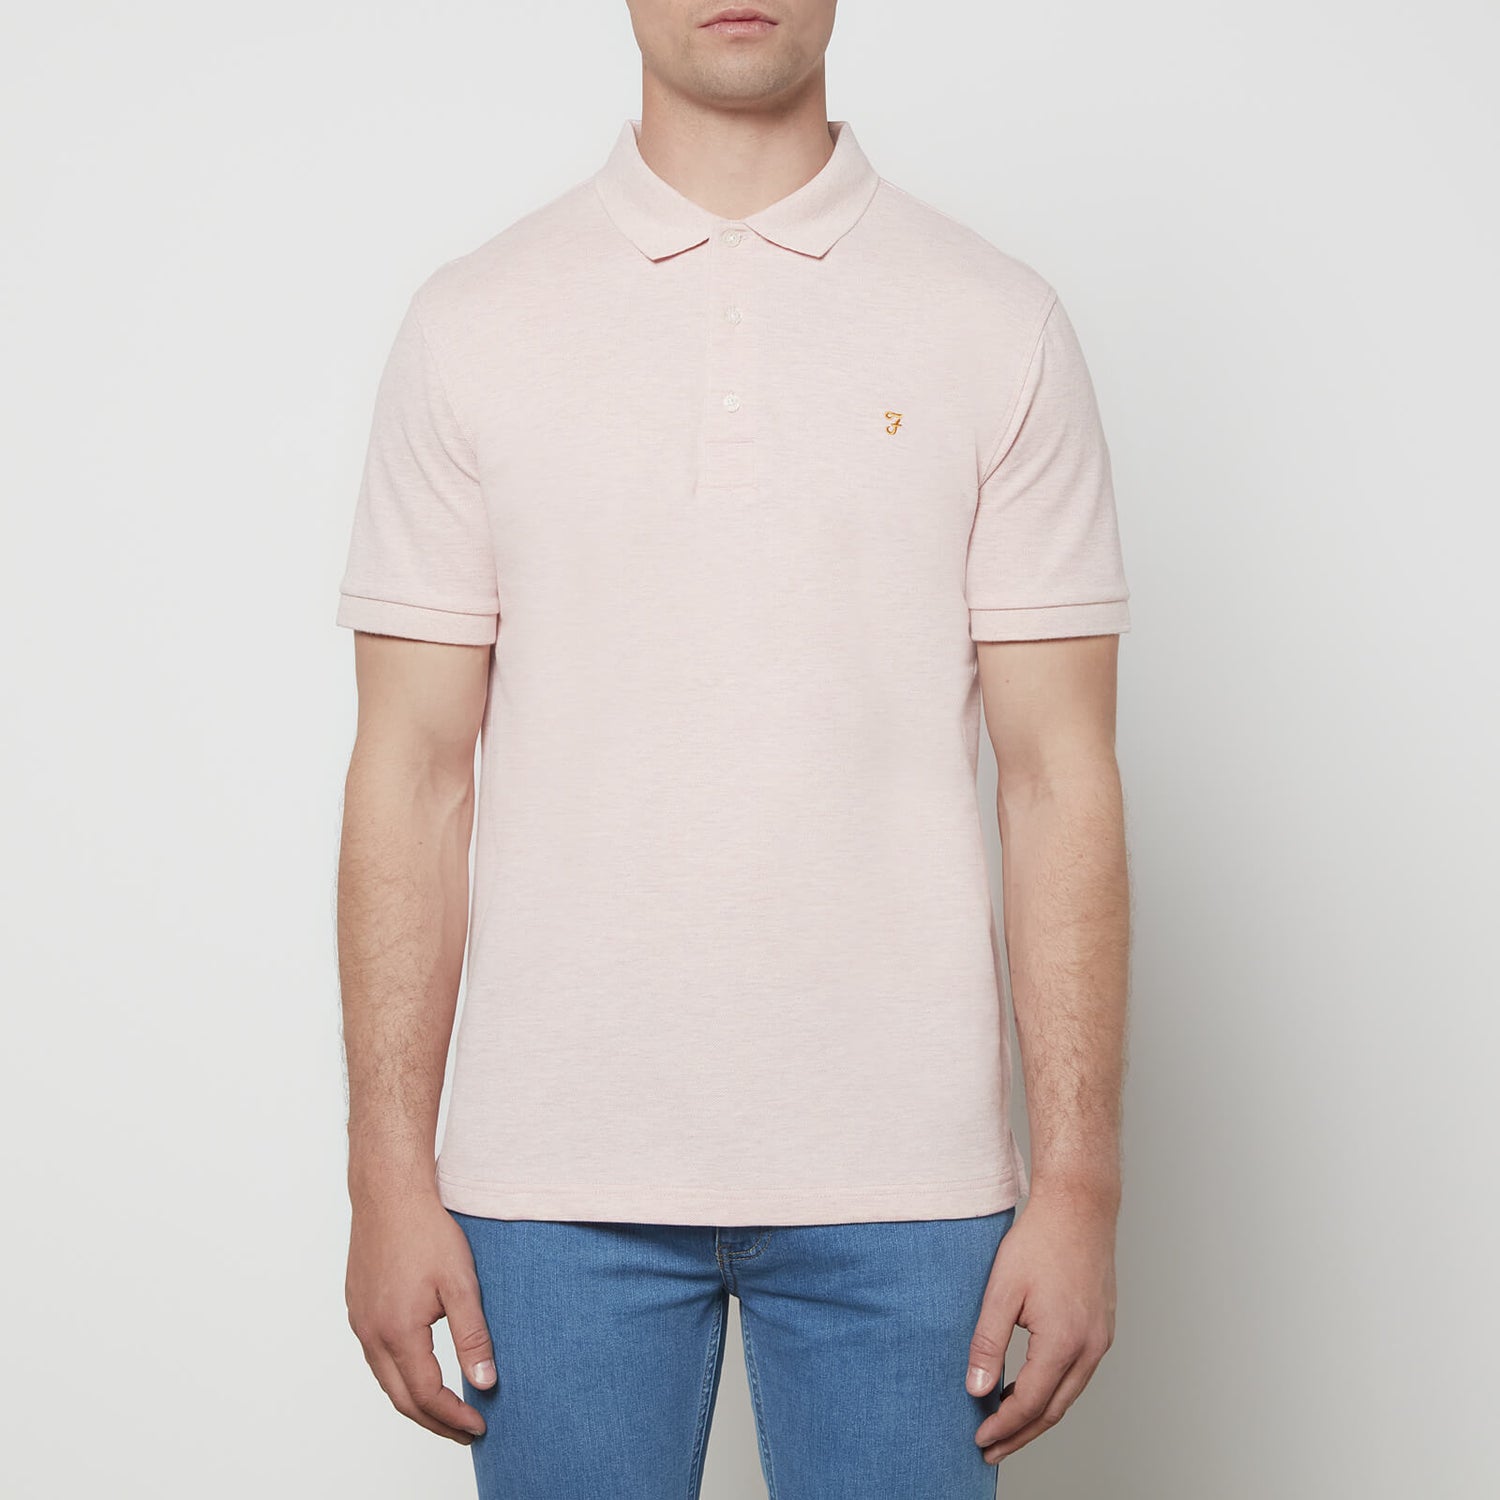 Farah Men's Blanes Polo Shirt - Corinthian Pink - S